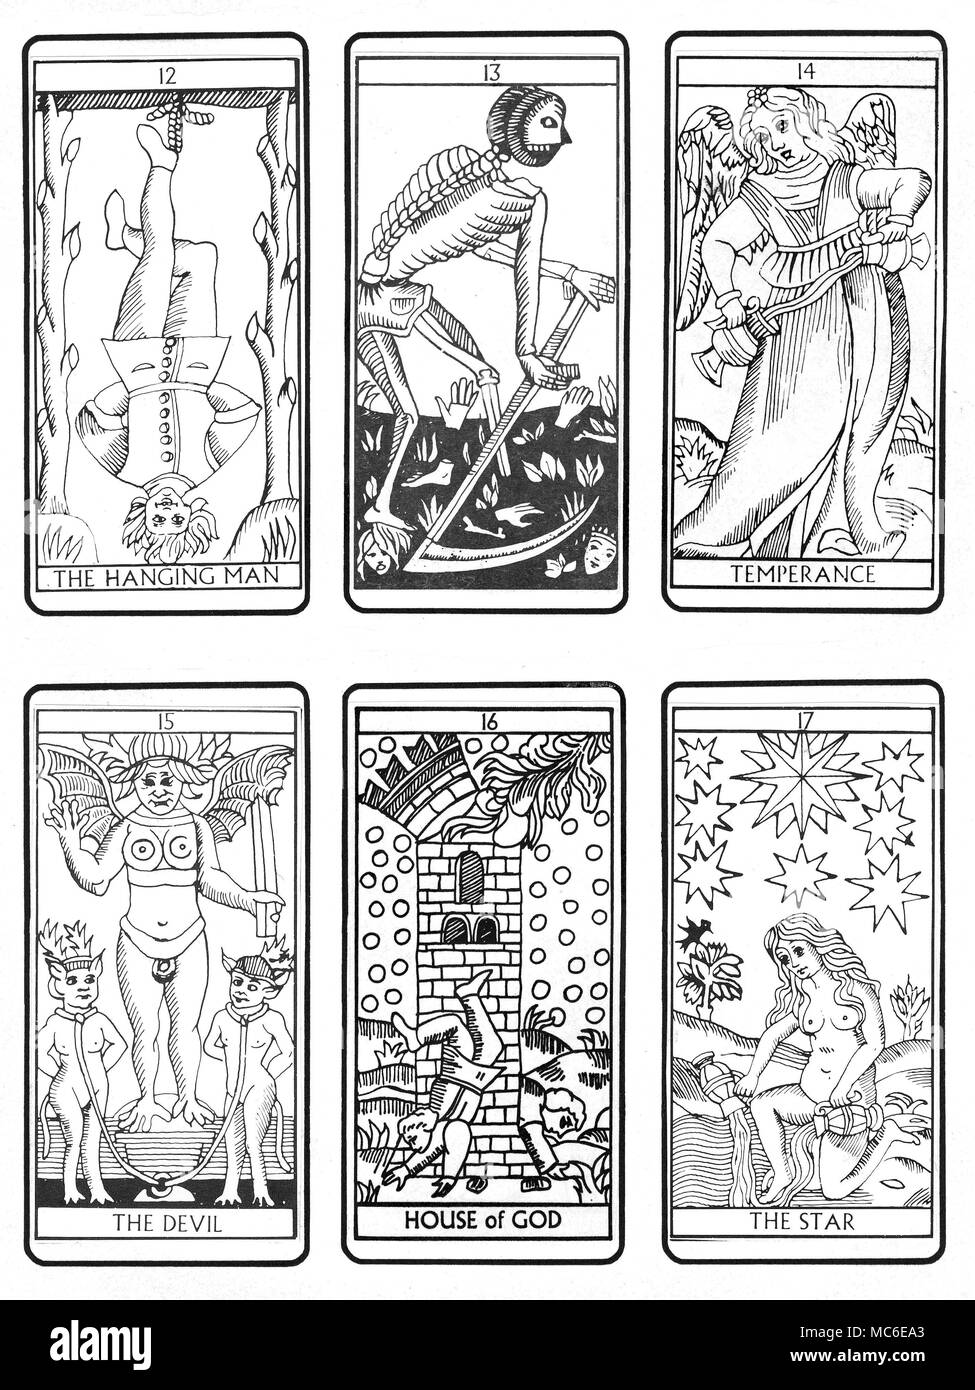 Tarocchi - Mazzo di Marsiglia la terza sei della sequenza di 22 carte dei Tarocchi (secondo il tradizionale design di Marsiglia), dalla dodicesima card (l'uomo appeso), attraverso la scheda di morte temperanza, il Diavolo, la casa di Dio e la stella. I restanti sequenze sono disponibili, in lotti di 6. Foto Stock